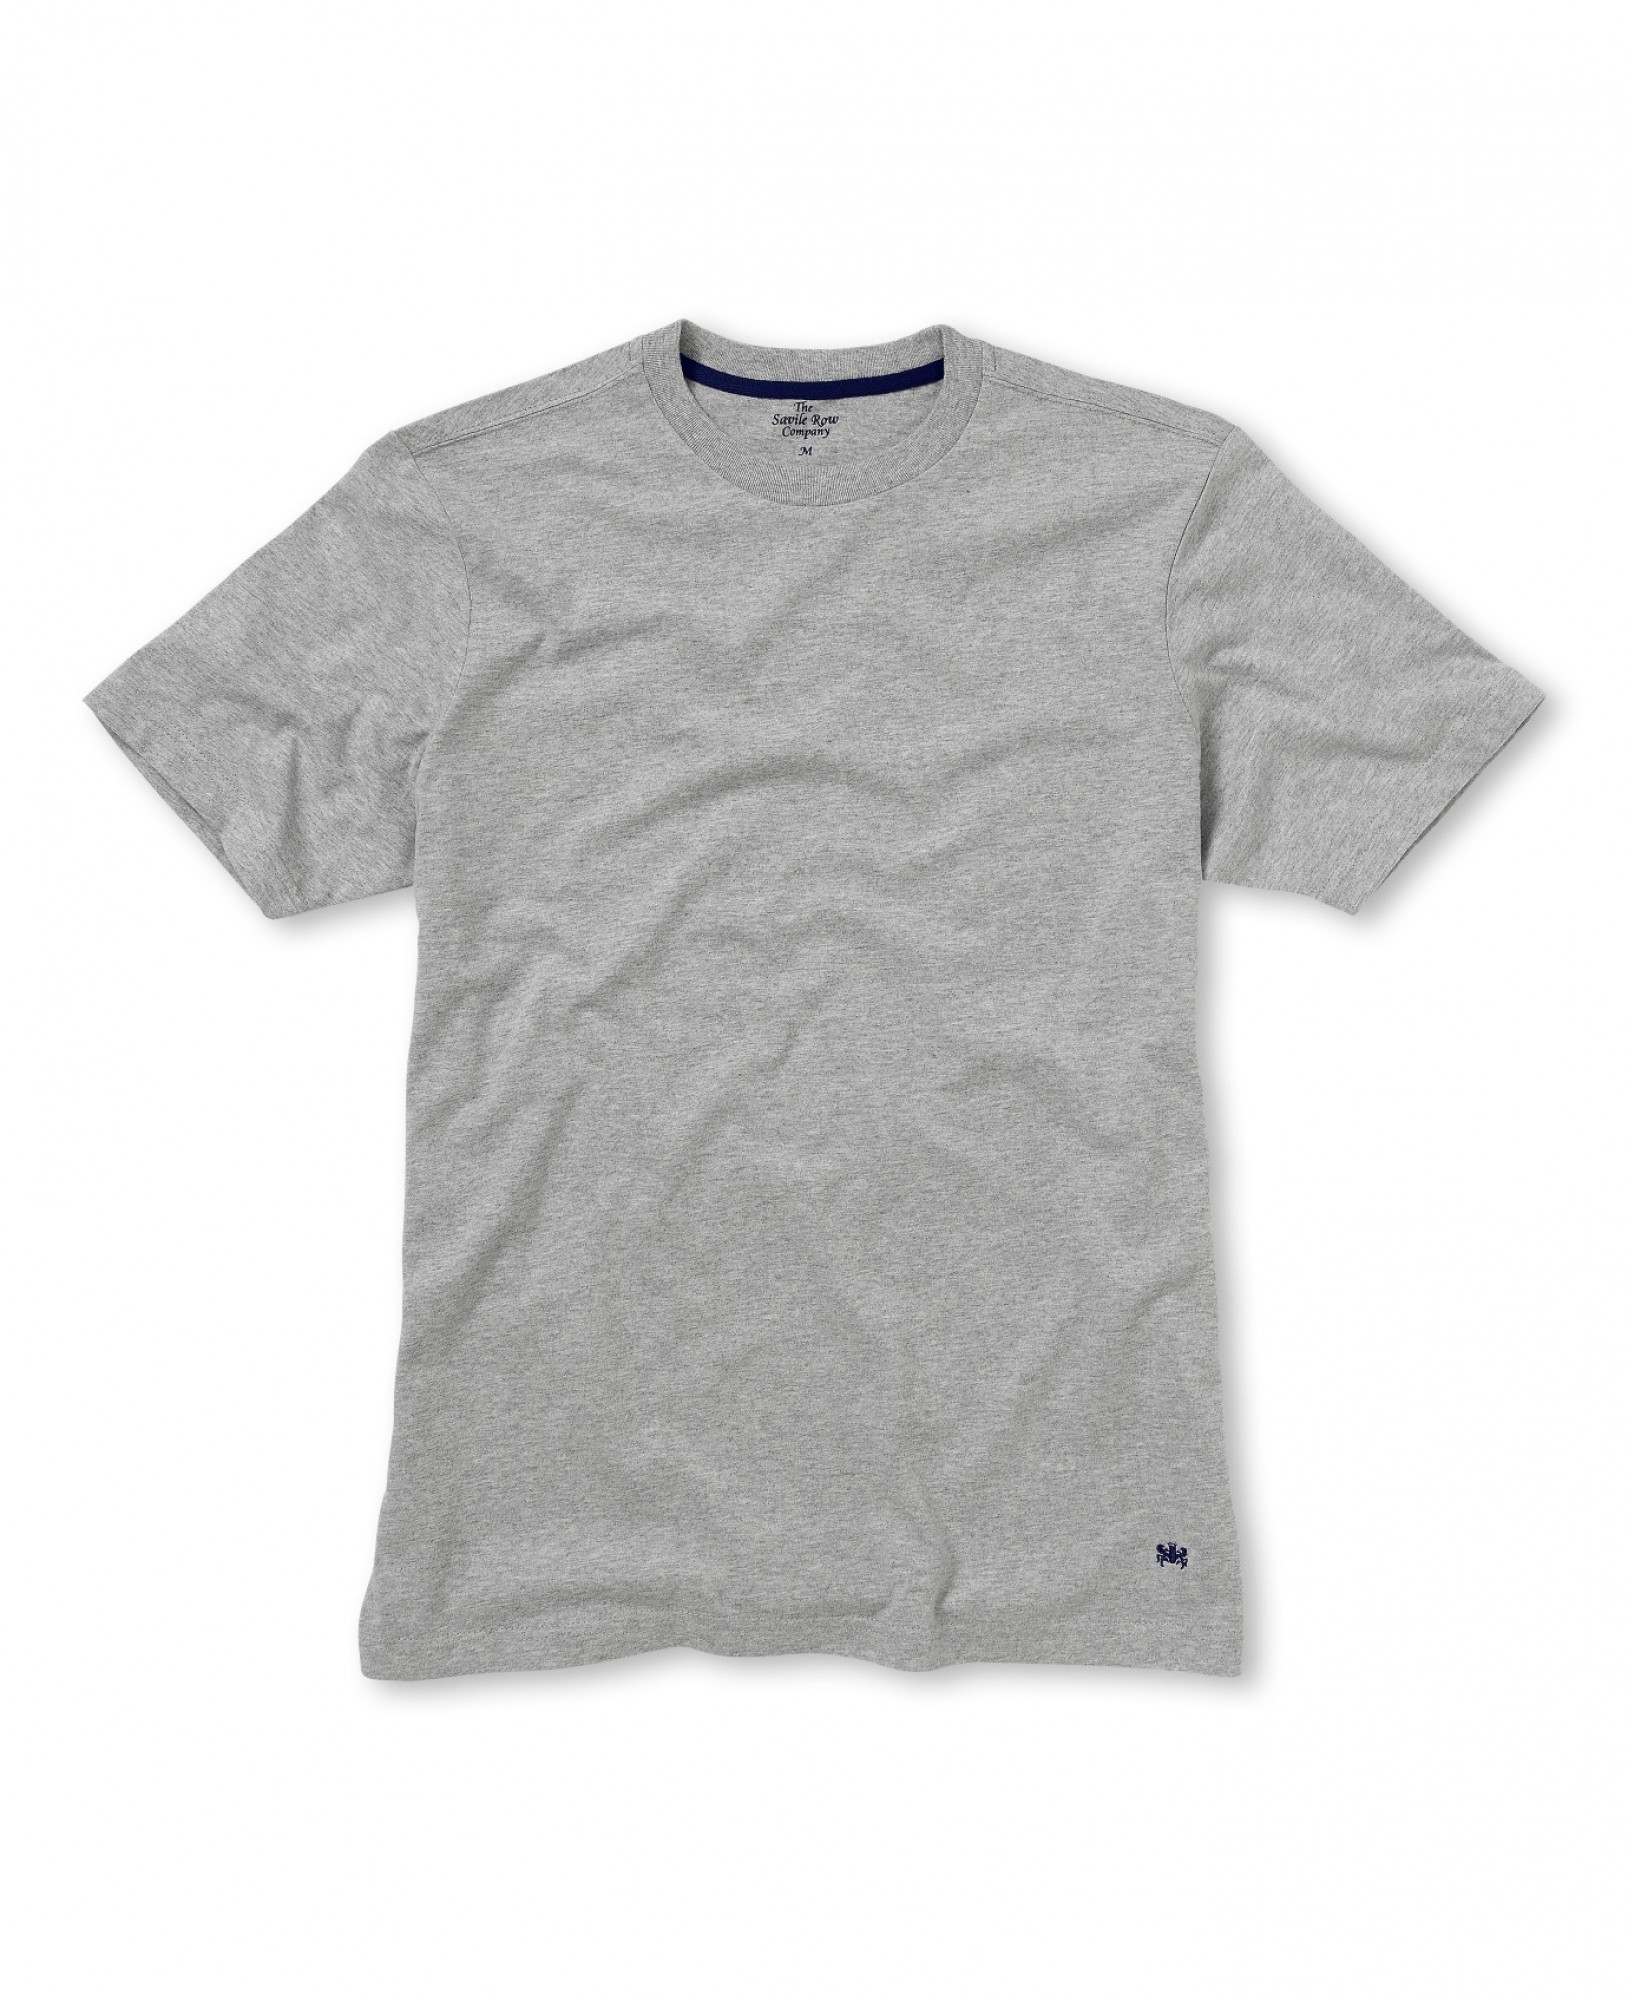 Savile Row Co. Grey Short Sleeve T-Shirt S